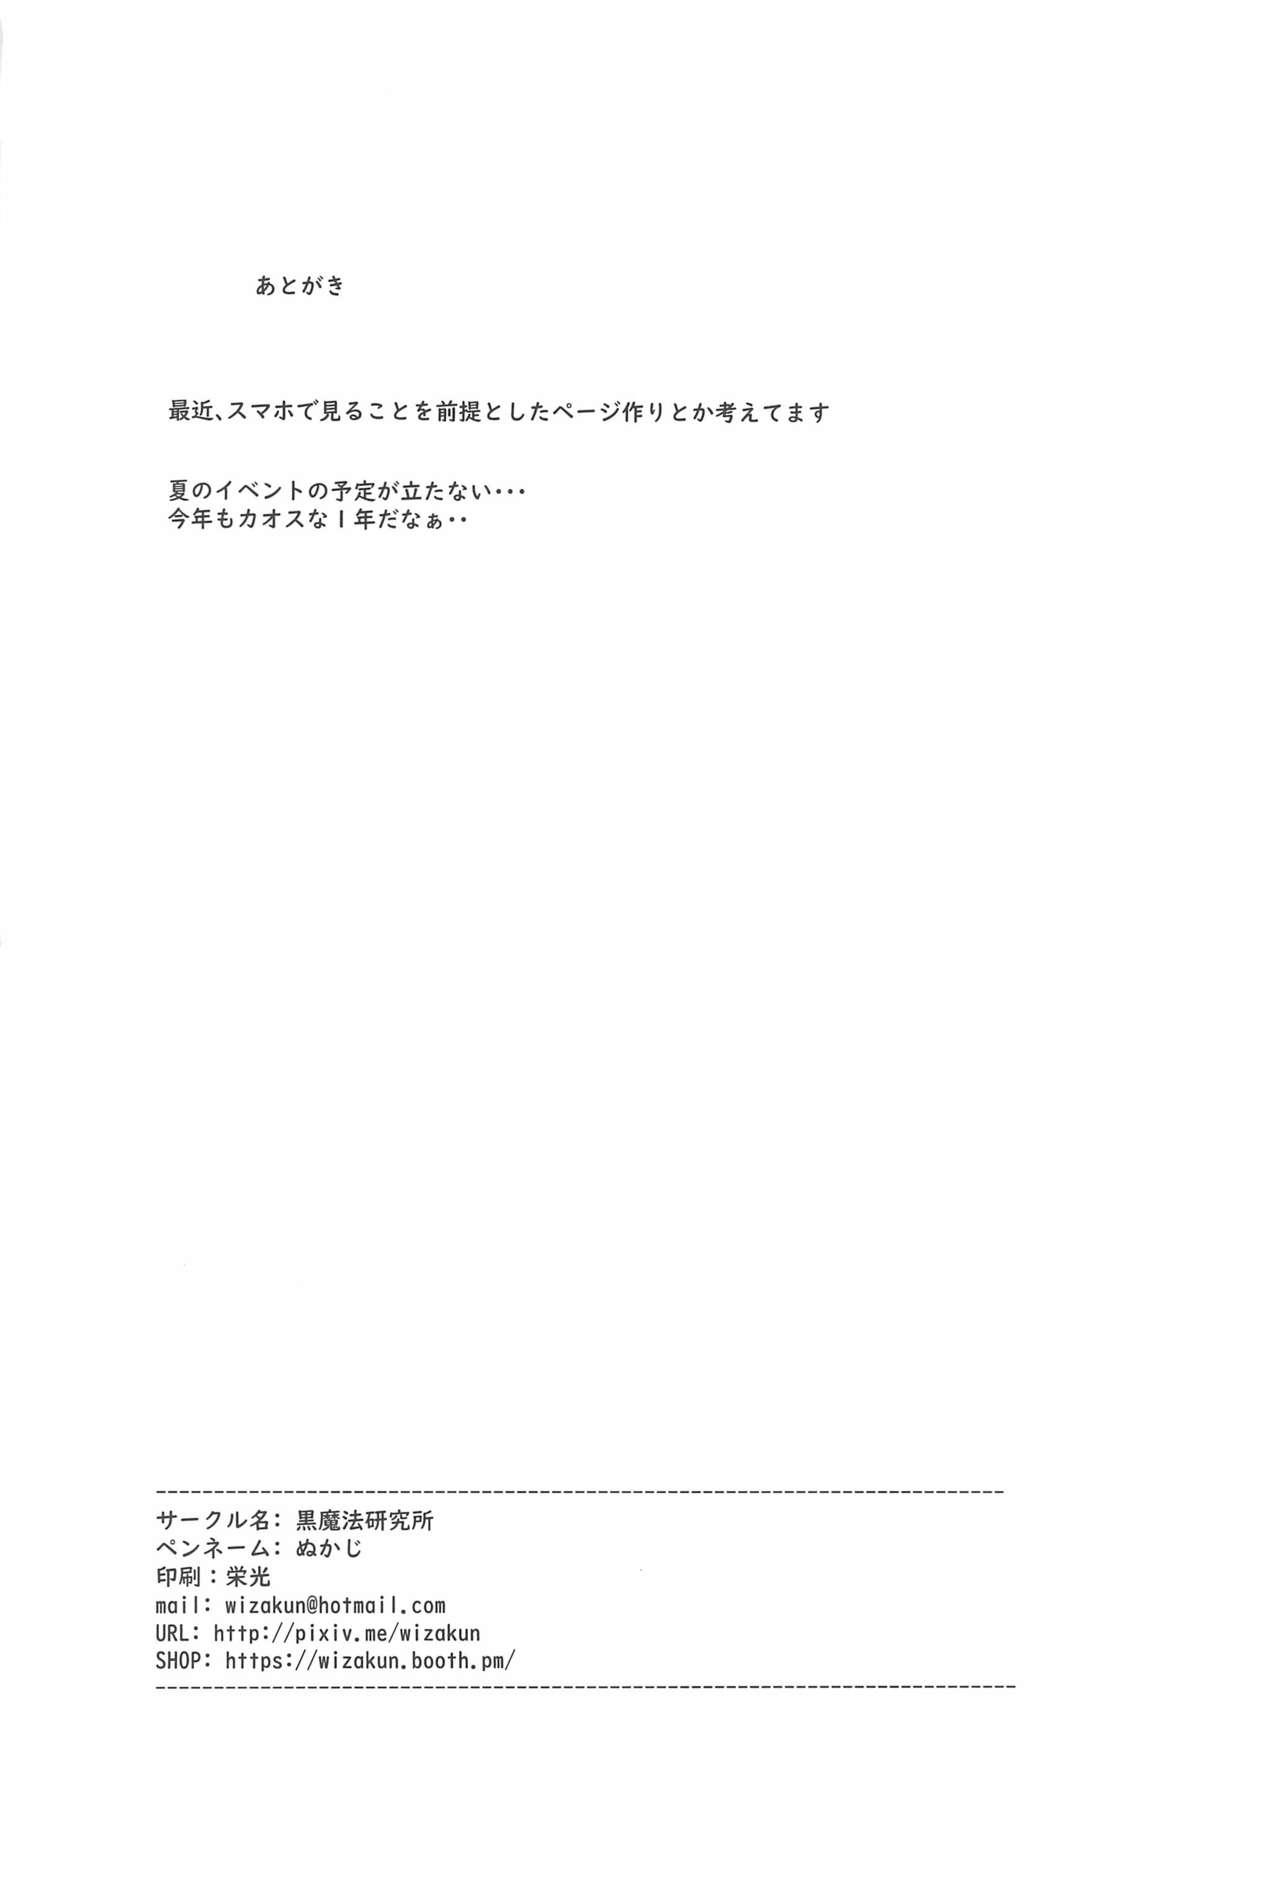 Work Ari Channel 20210620 Shiensha Gentei Plan Nama Ecchi Haishin - Original Nalgas - Page 36